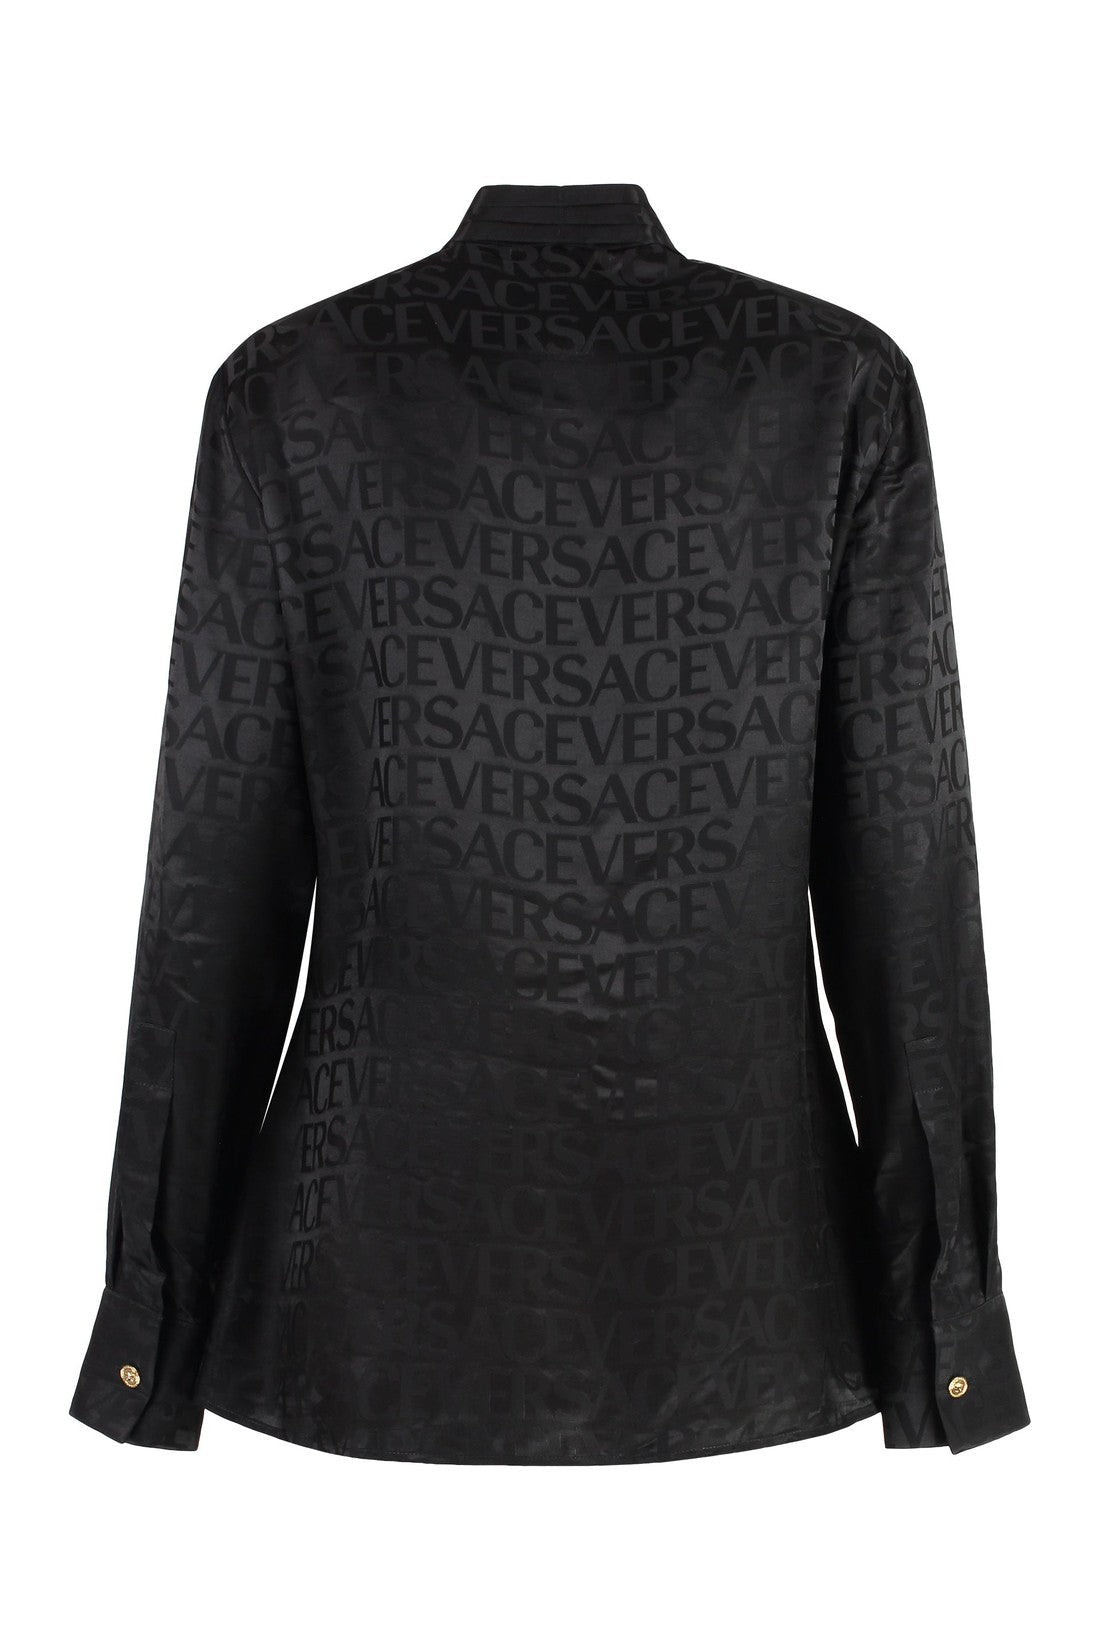 Versace-OUTLET-SALE-Printed satin blouse-ARCHIVIST